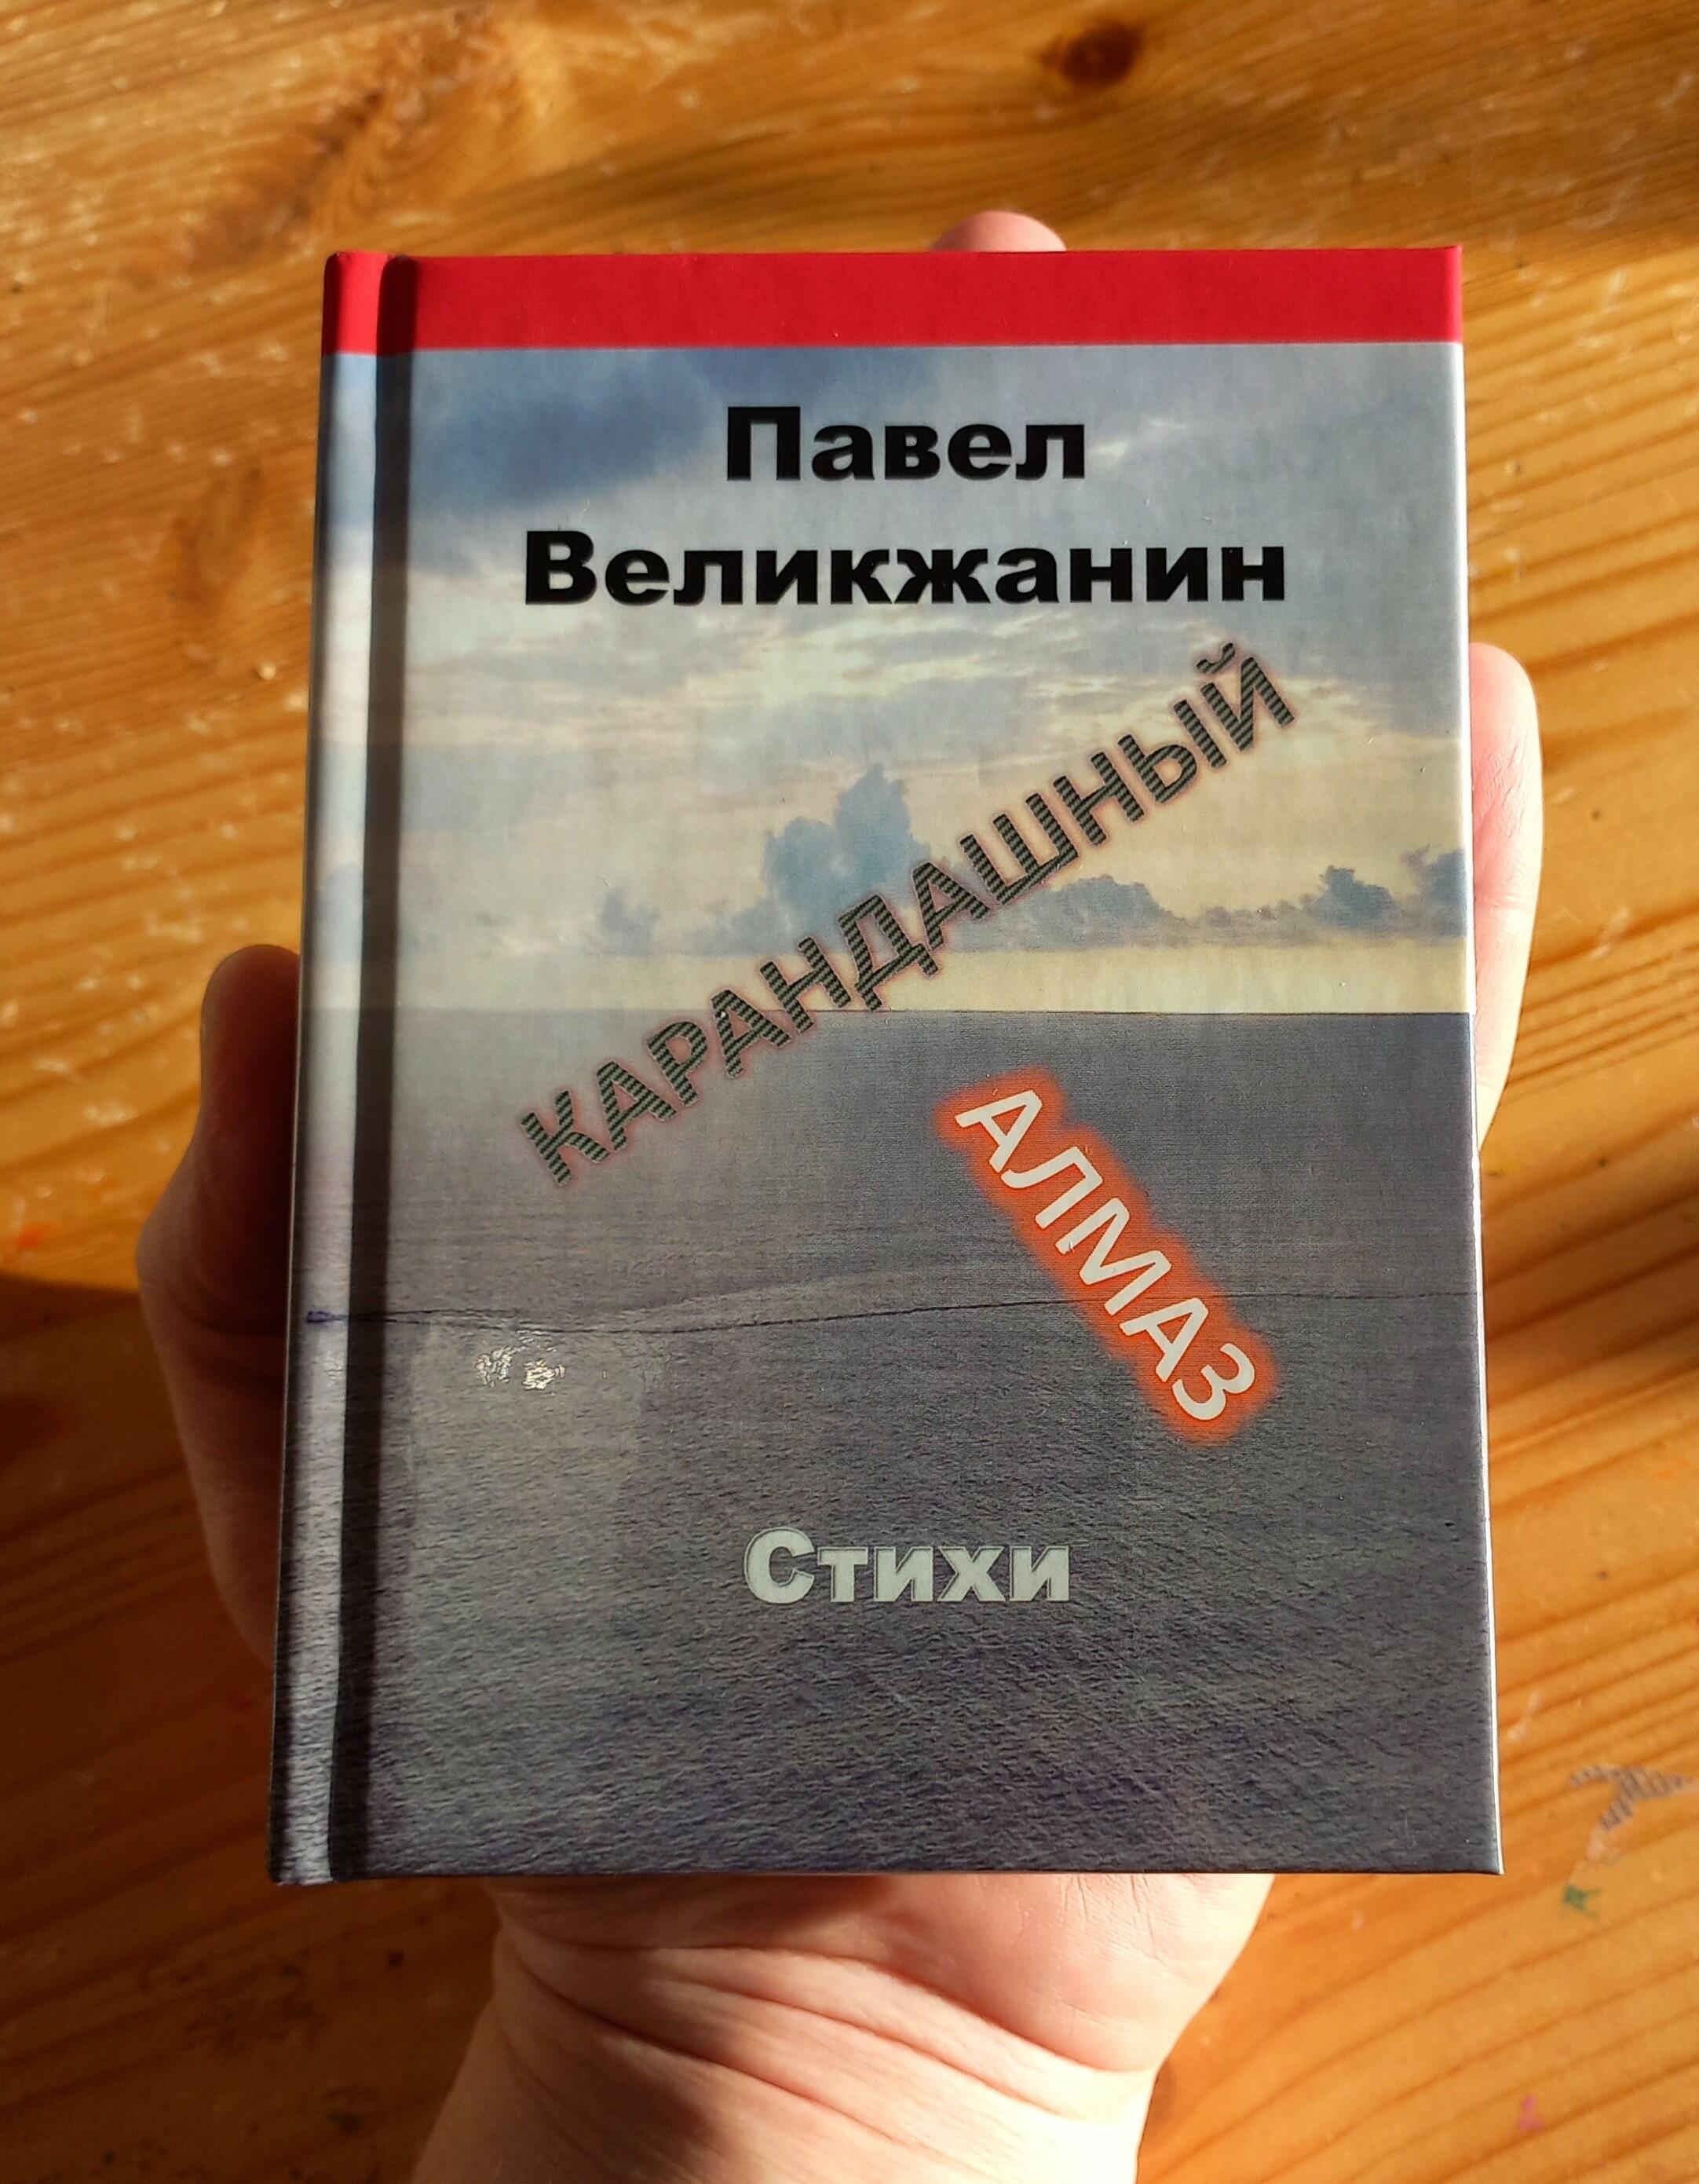 Книга стихов Павла Великжанина "Карандашный алмаз" (2022)